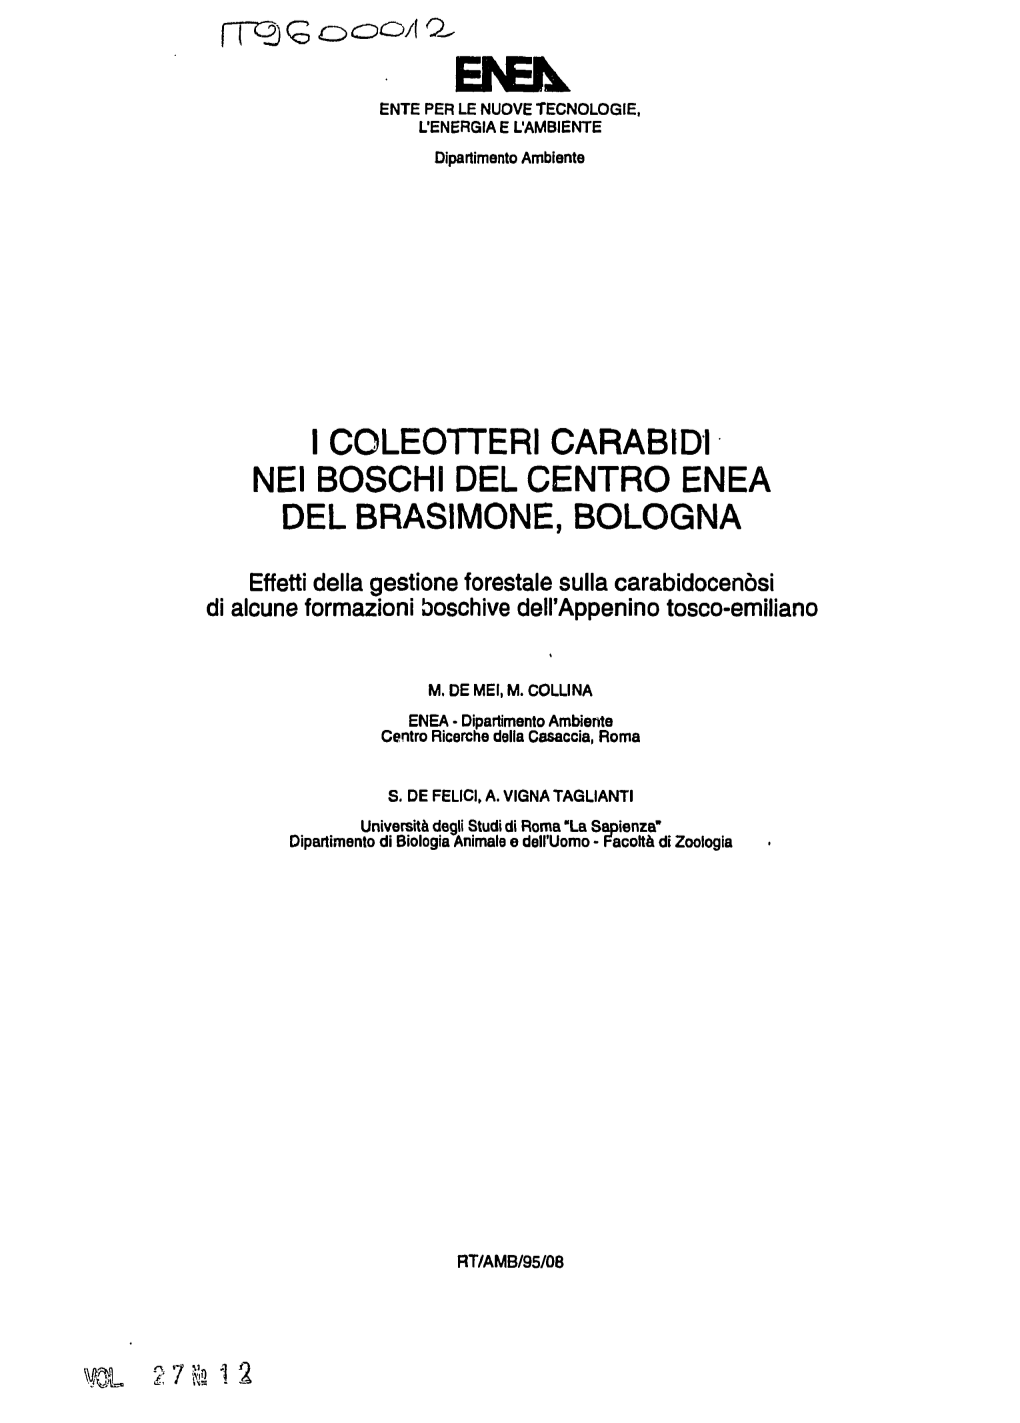 I Coleotteri Carabo Nei Boschi Del Centro Enea Del Brasimone, Bologna